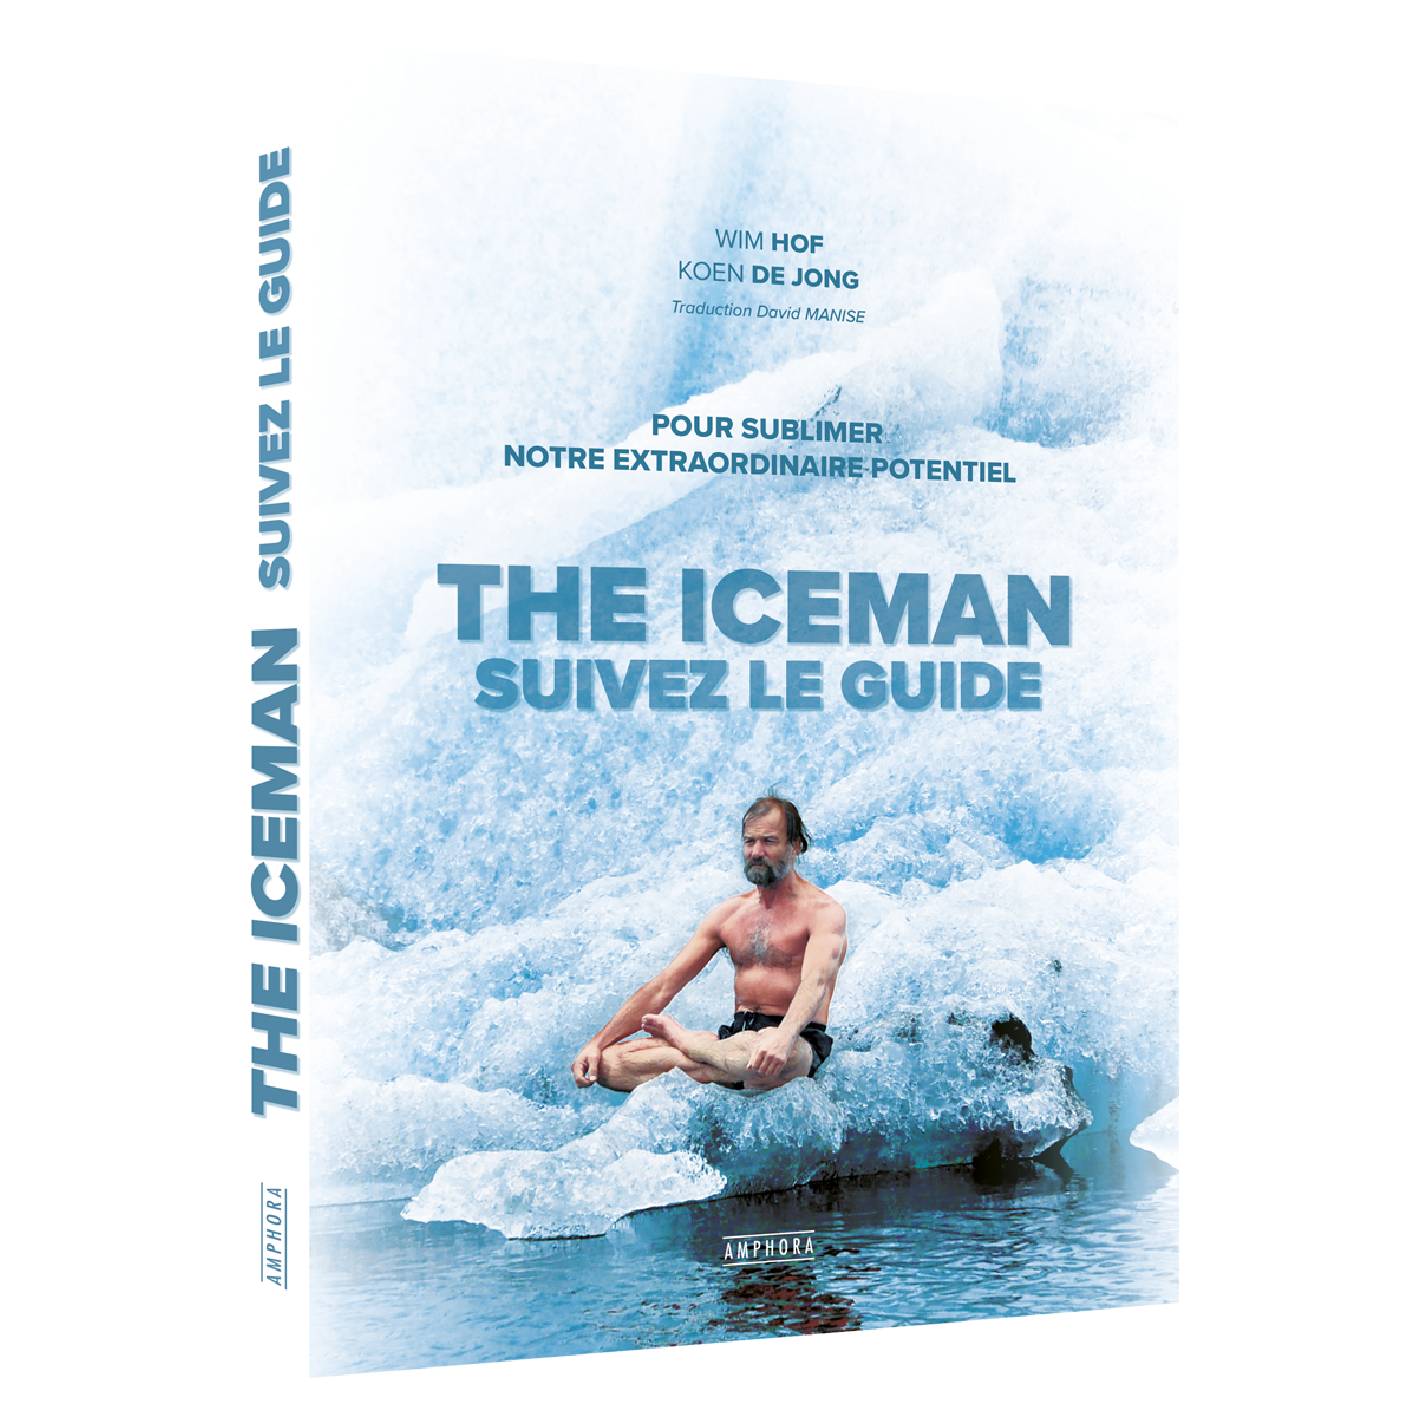 The Iceman - Suivez le guide